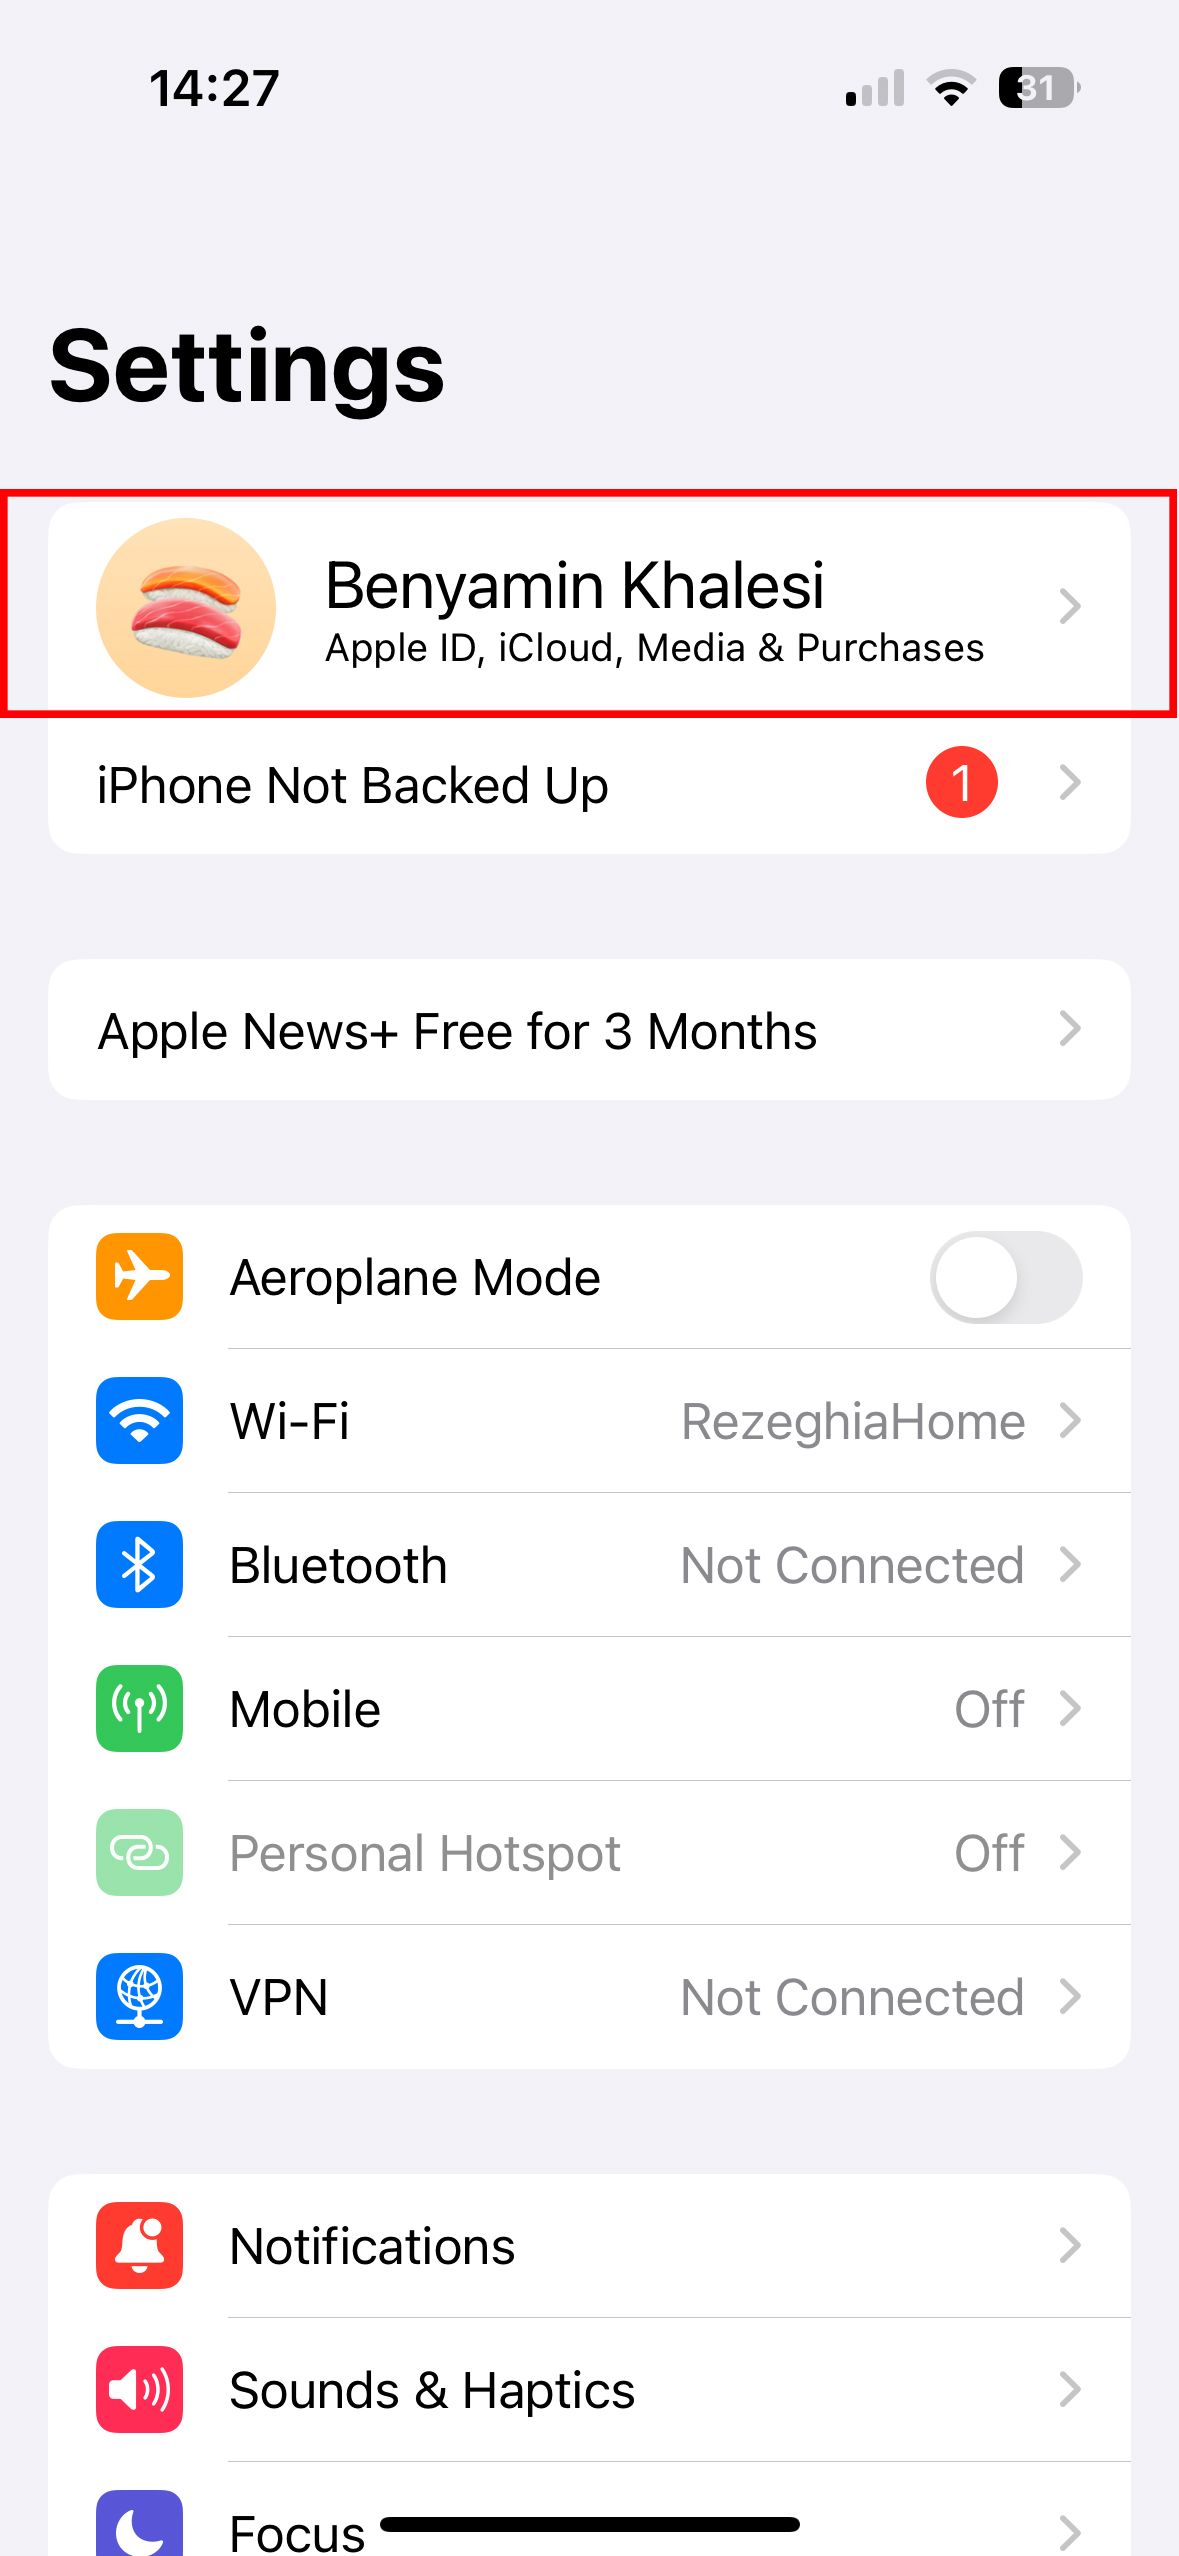 Uma captura de tela do menu de configurações do iPhone mostrando os detalhes do ID Apple do usuário na parte superior, junto com outras configurações como Modo Avião, Wi-Fi e Bluetooth.